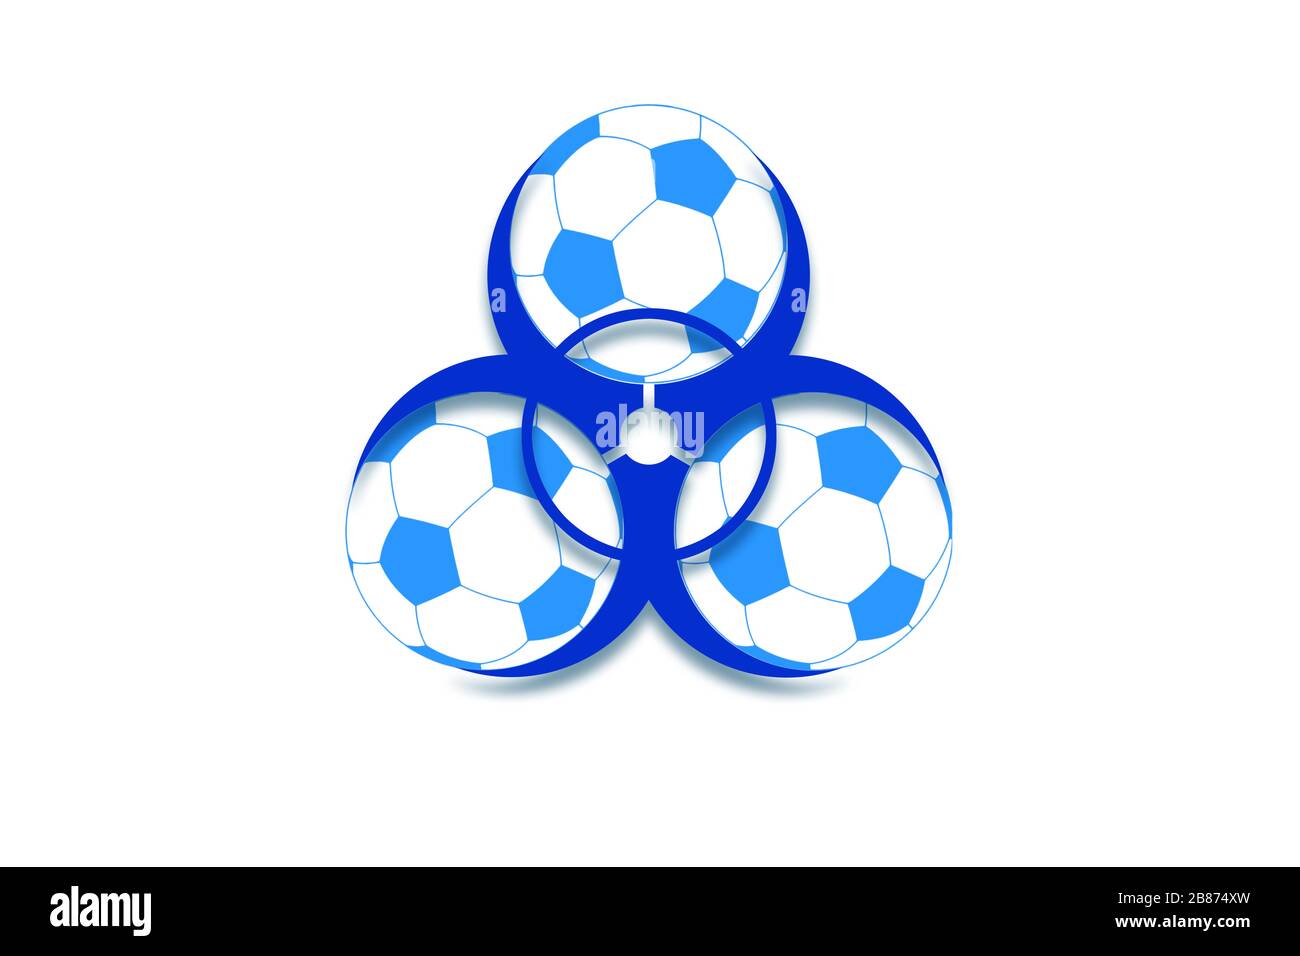 Illustration avec un signe de risque biologique et des ballons de football comme symbole de l'annulation des compétitions de football en raison du coronavirus Banque D'Images